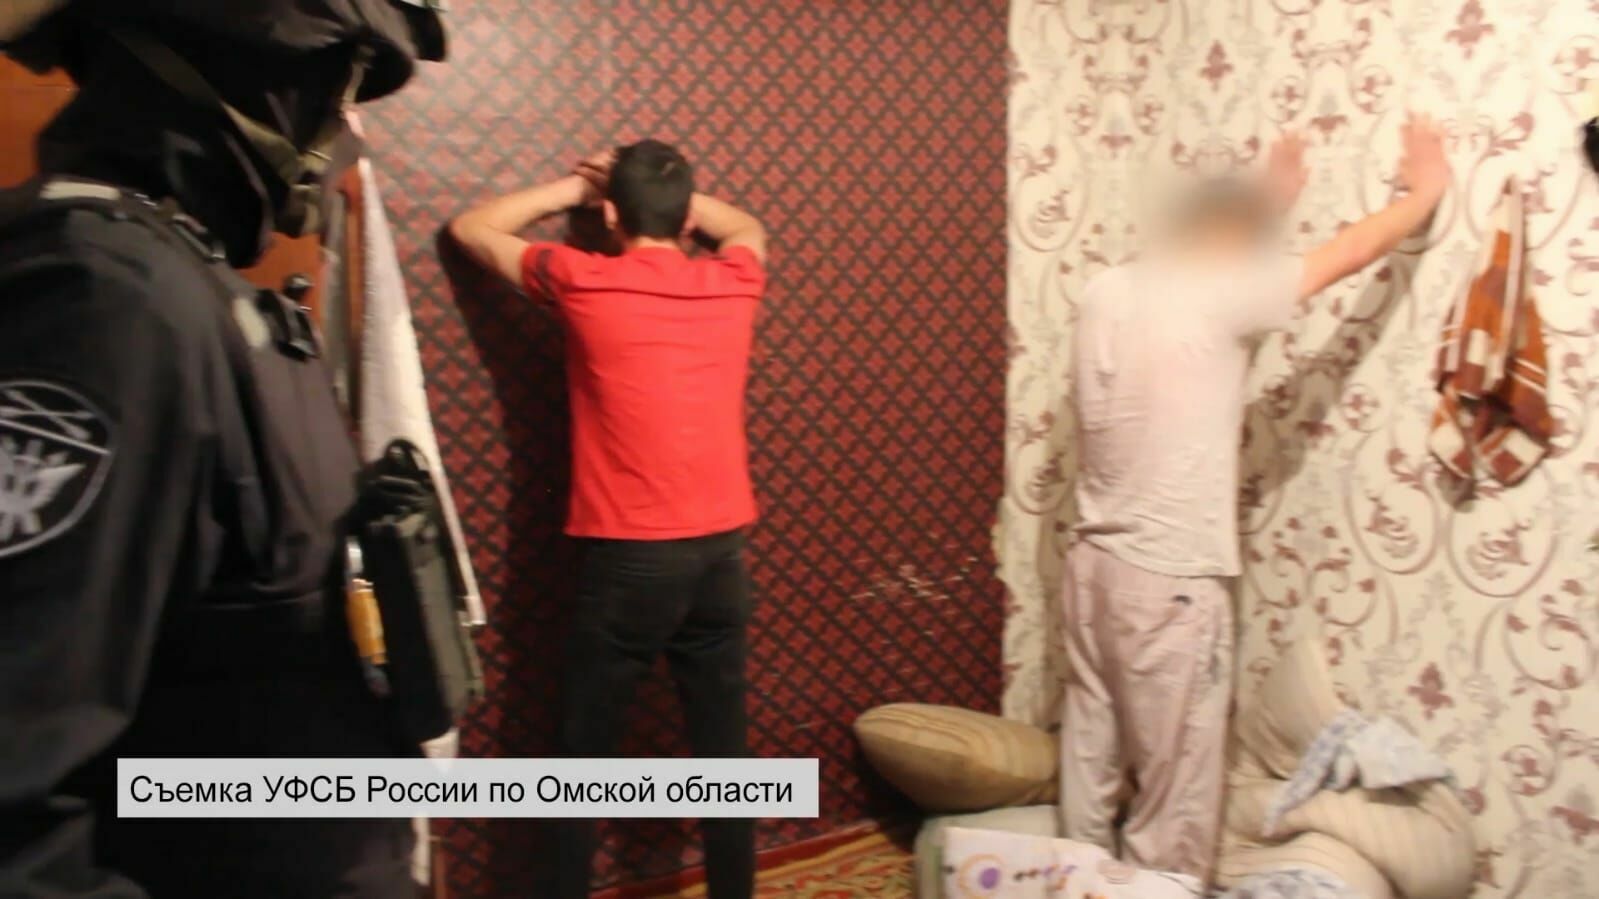 В Омске задержали членов террористической организации